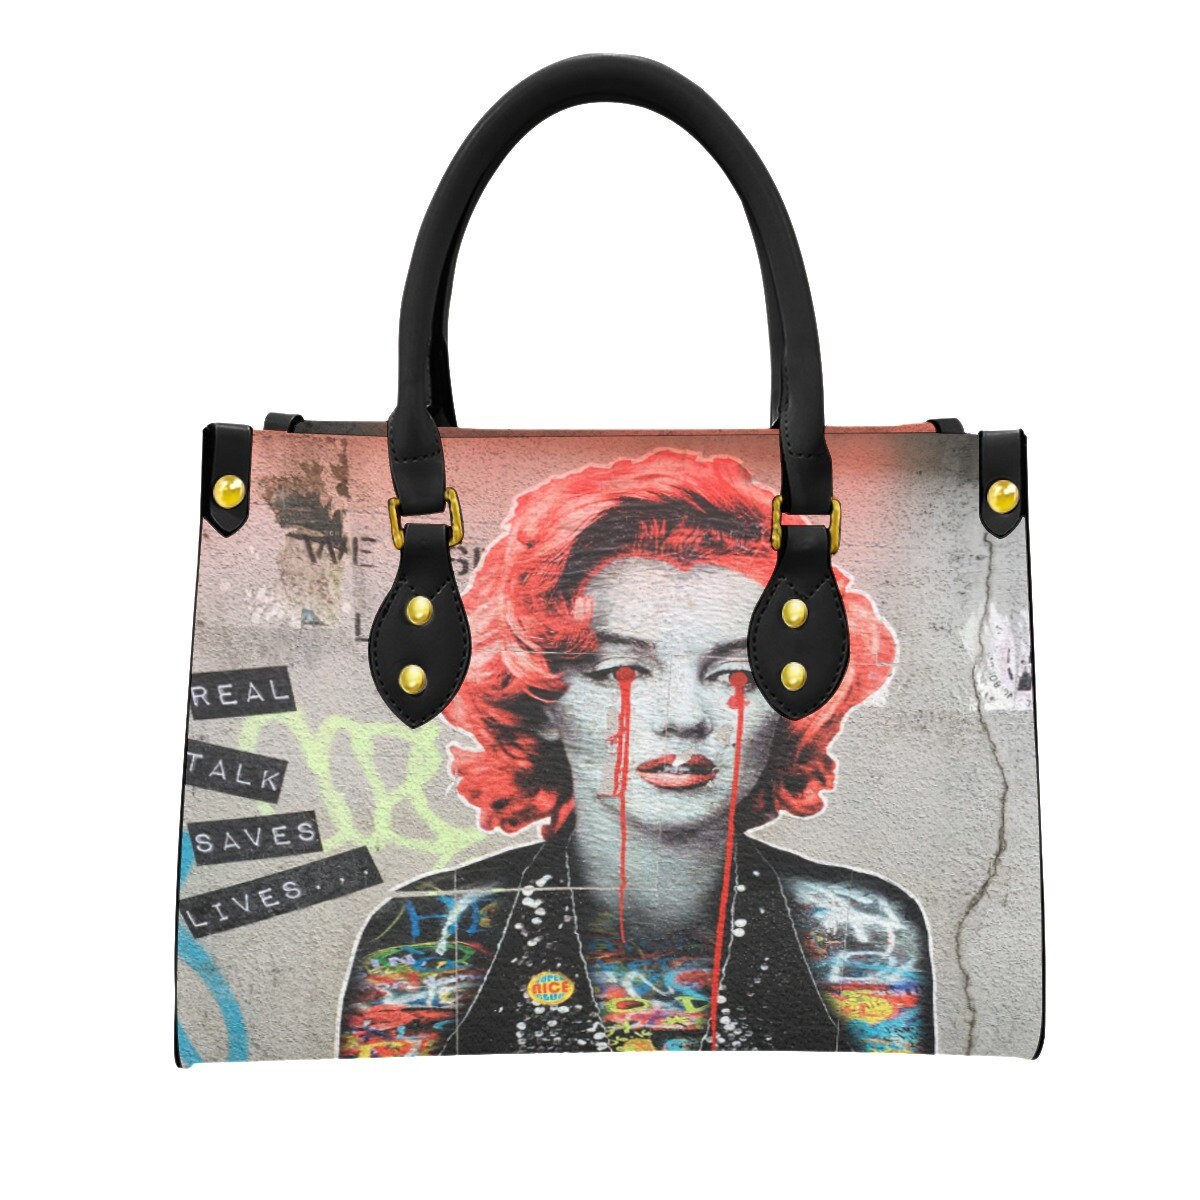 Marilyn Monroe Purse Handbag